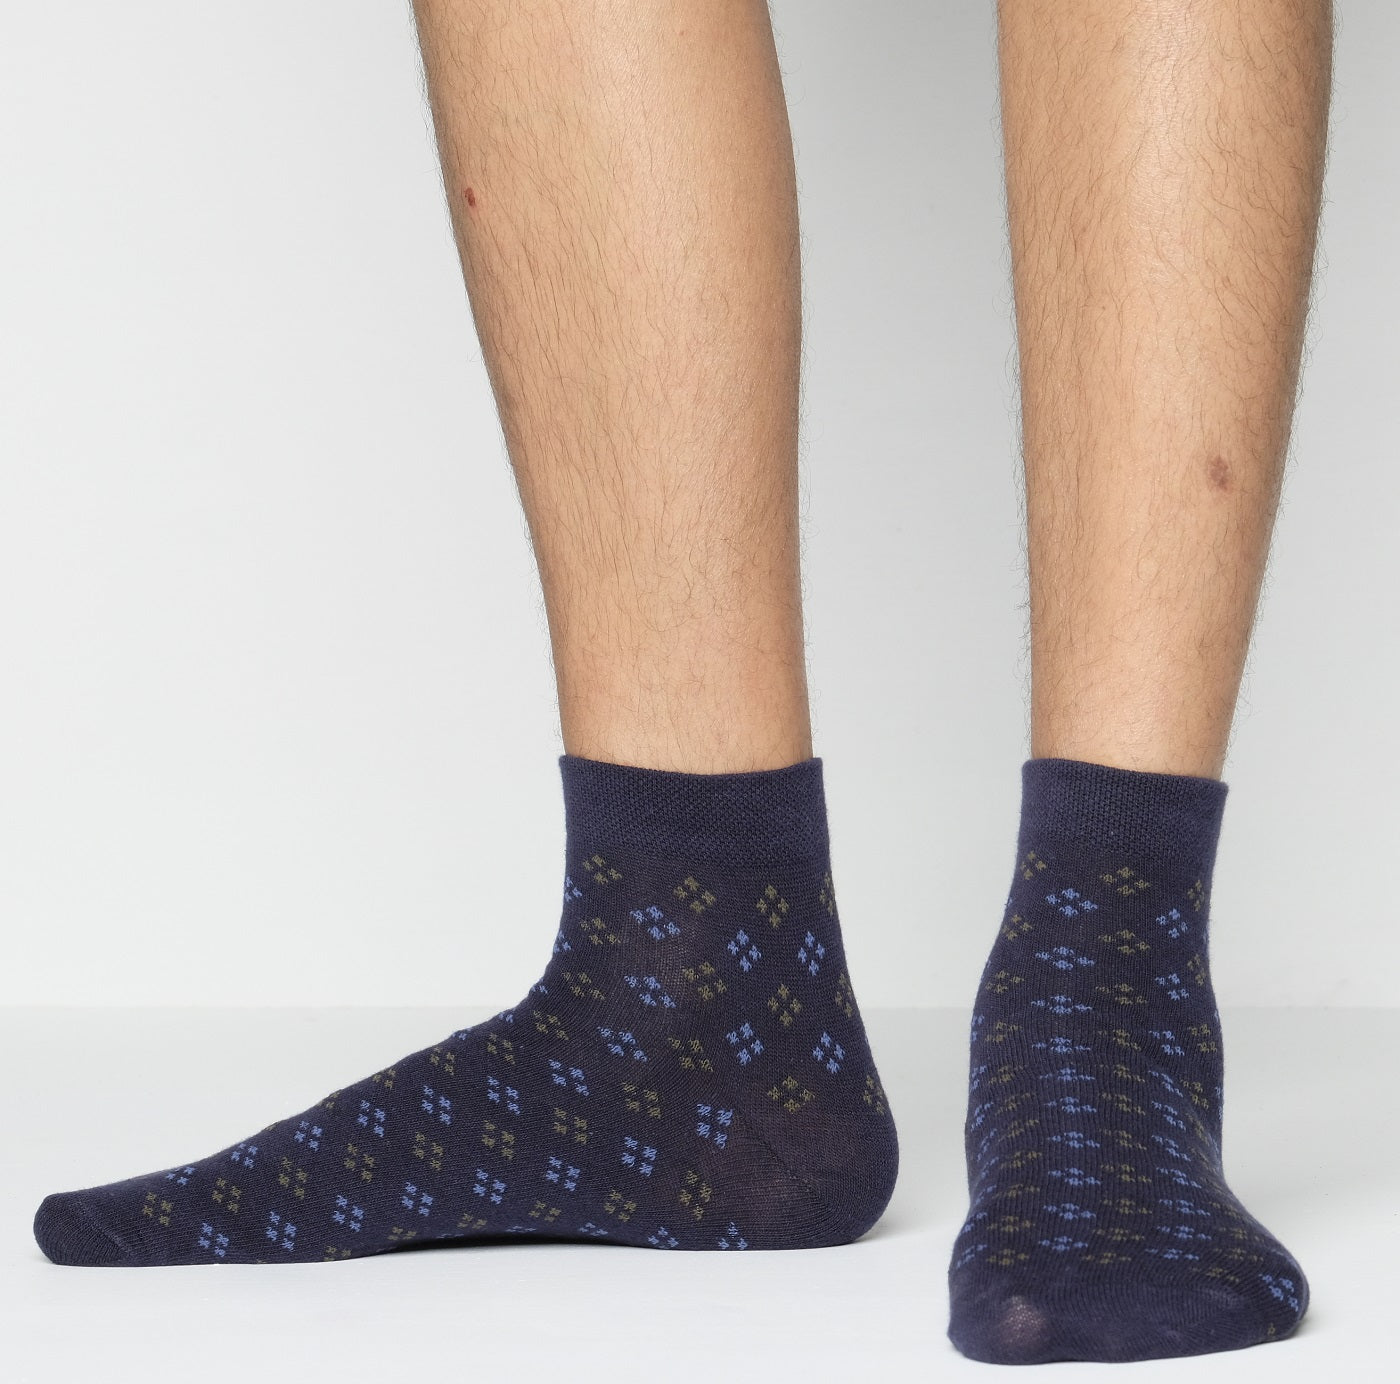 Swan Infiknit Ankle Socks for Men